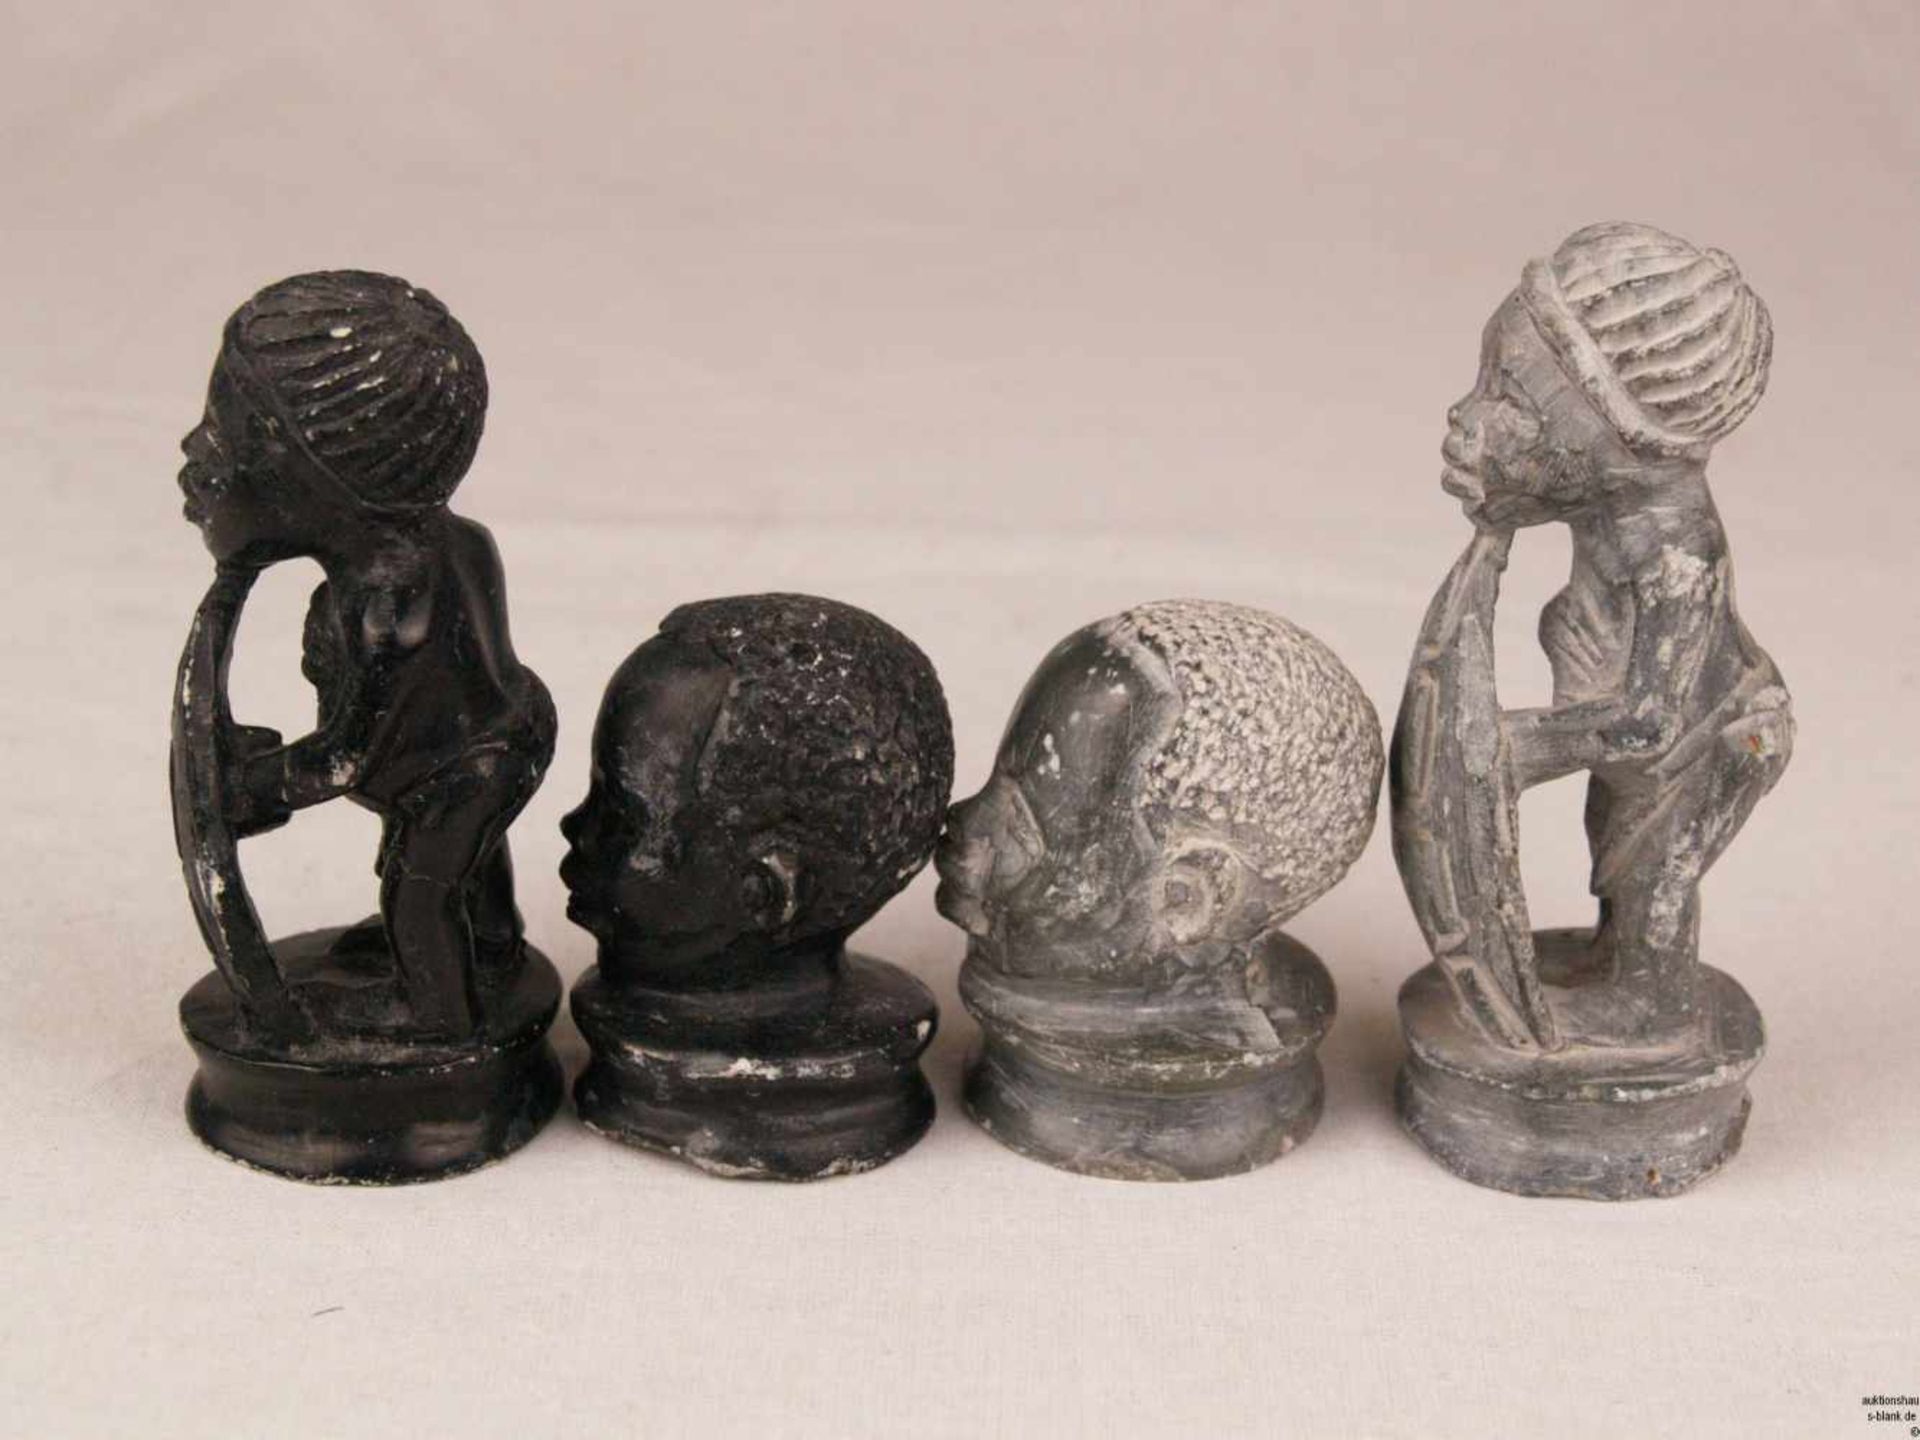 Schachfiguren - Speckstein, geschnitzt, schwarz- und grünfarben, vollständiger Schachfiguren-Set mit - Bild 7 aus 7